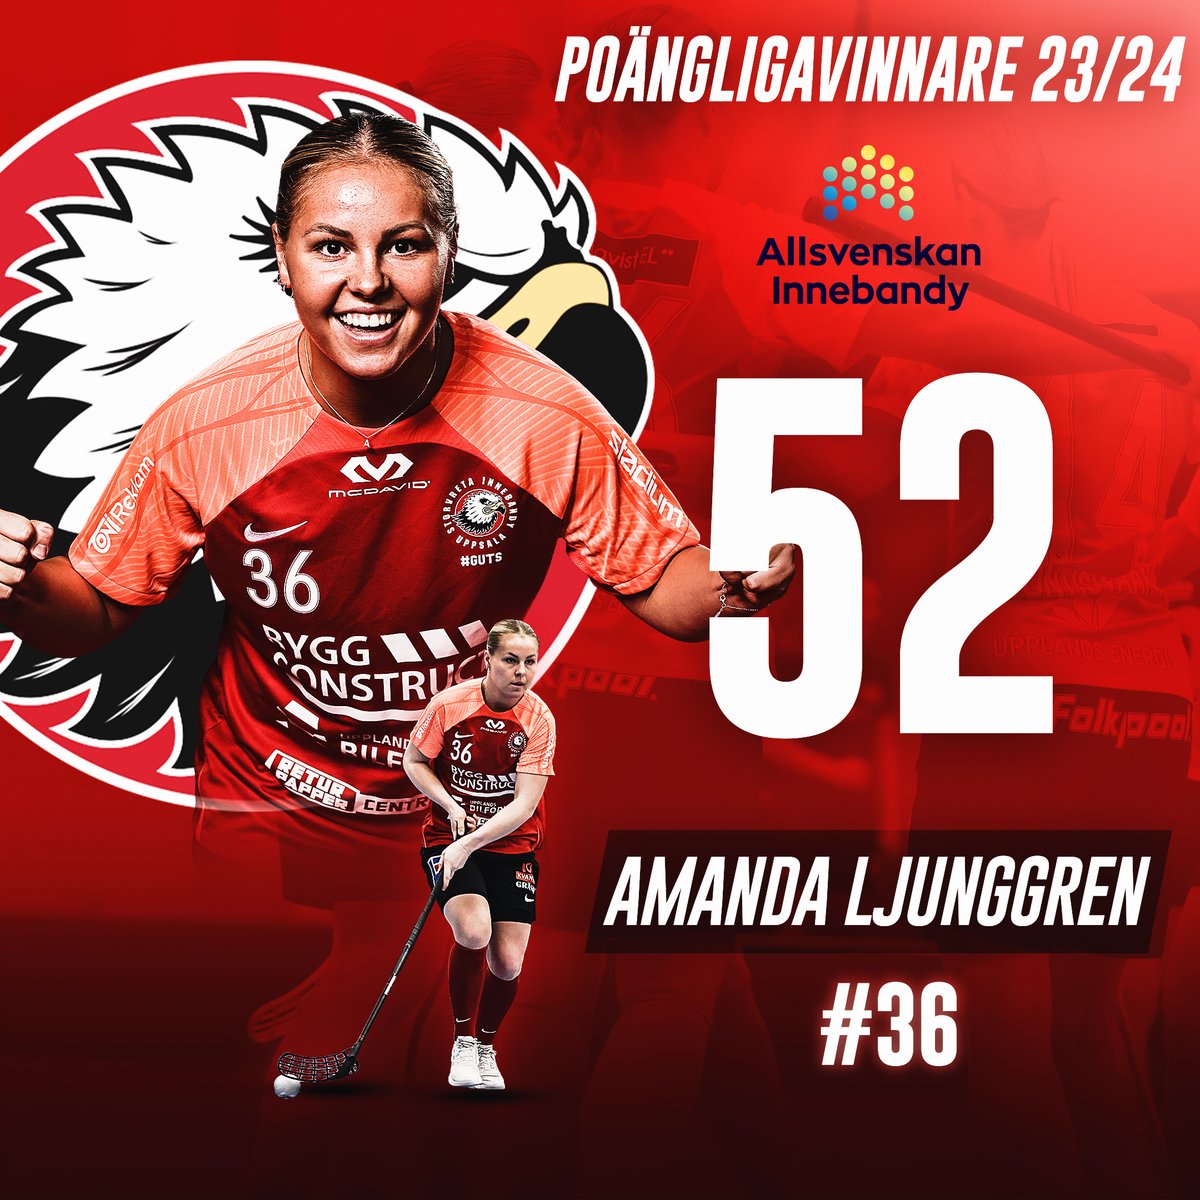 Grattis Amanda Ljunggren poängligavinnare Allsvenskan Östra 23/24🦅🤩
#viärvreta #Allsvenskan #innebandy #ViÄlskarInnebandy